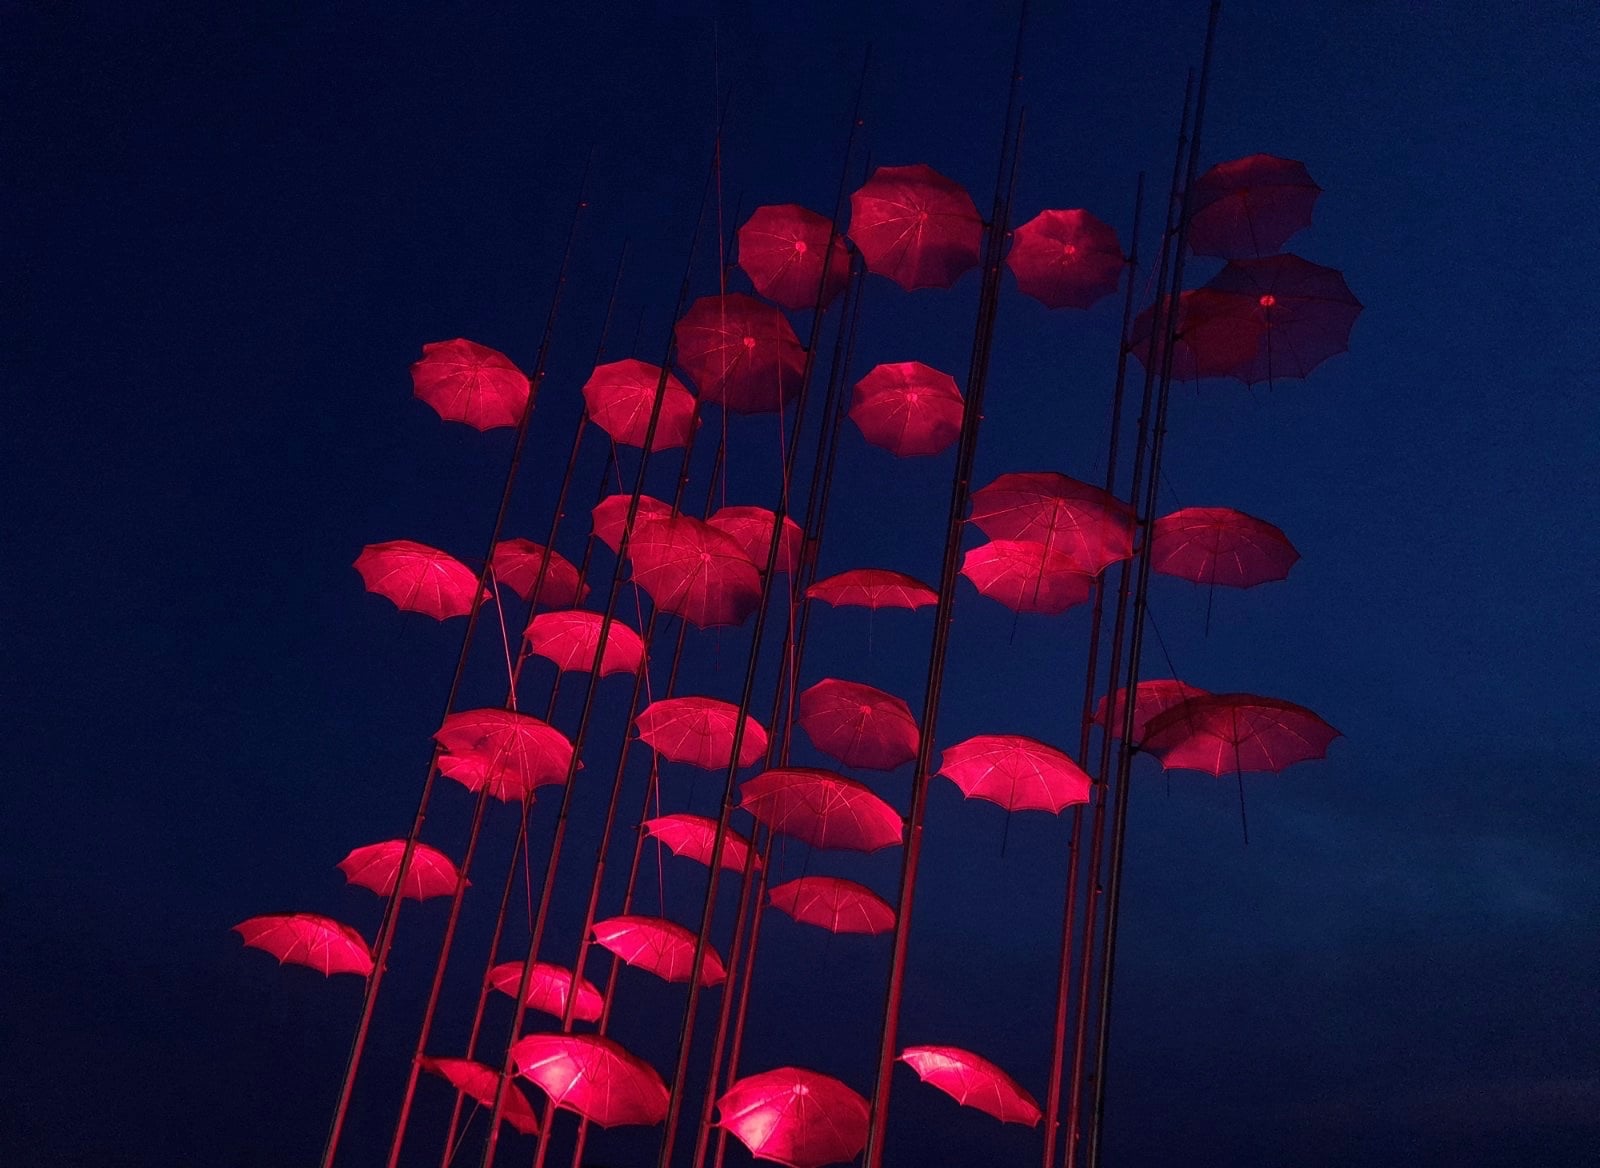 Κωνσταντίνος Ζέρβας | Μεγάλη Πέμπτη: Οι ομπρέλες μας στο χρώμα που συμβολίζει τη σημερινή ημέρα